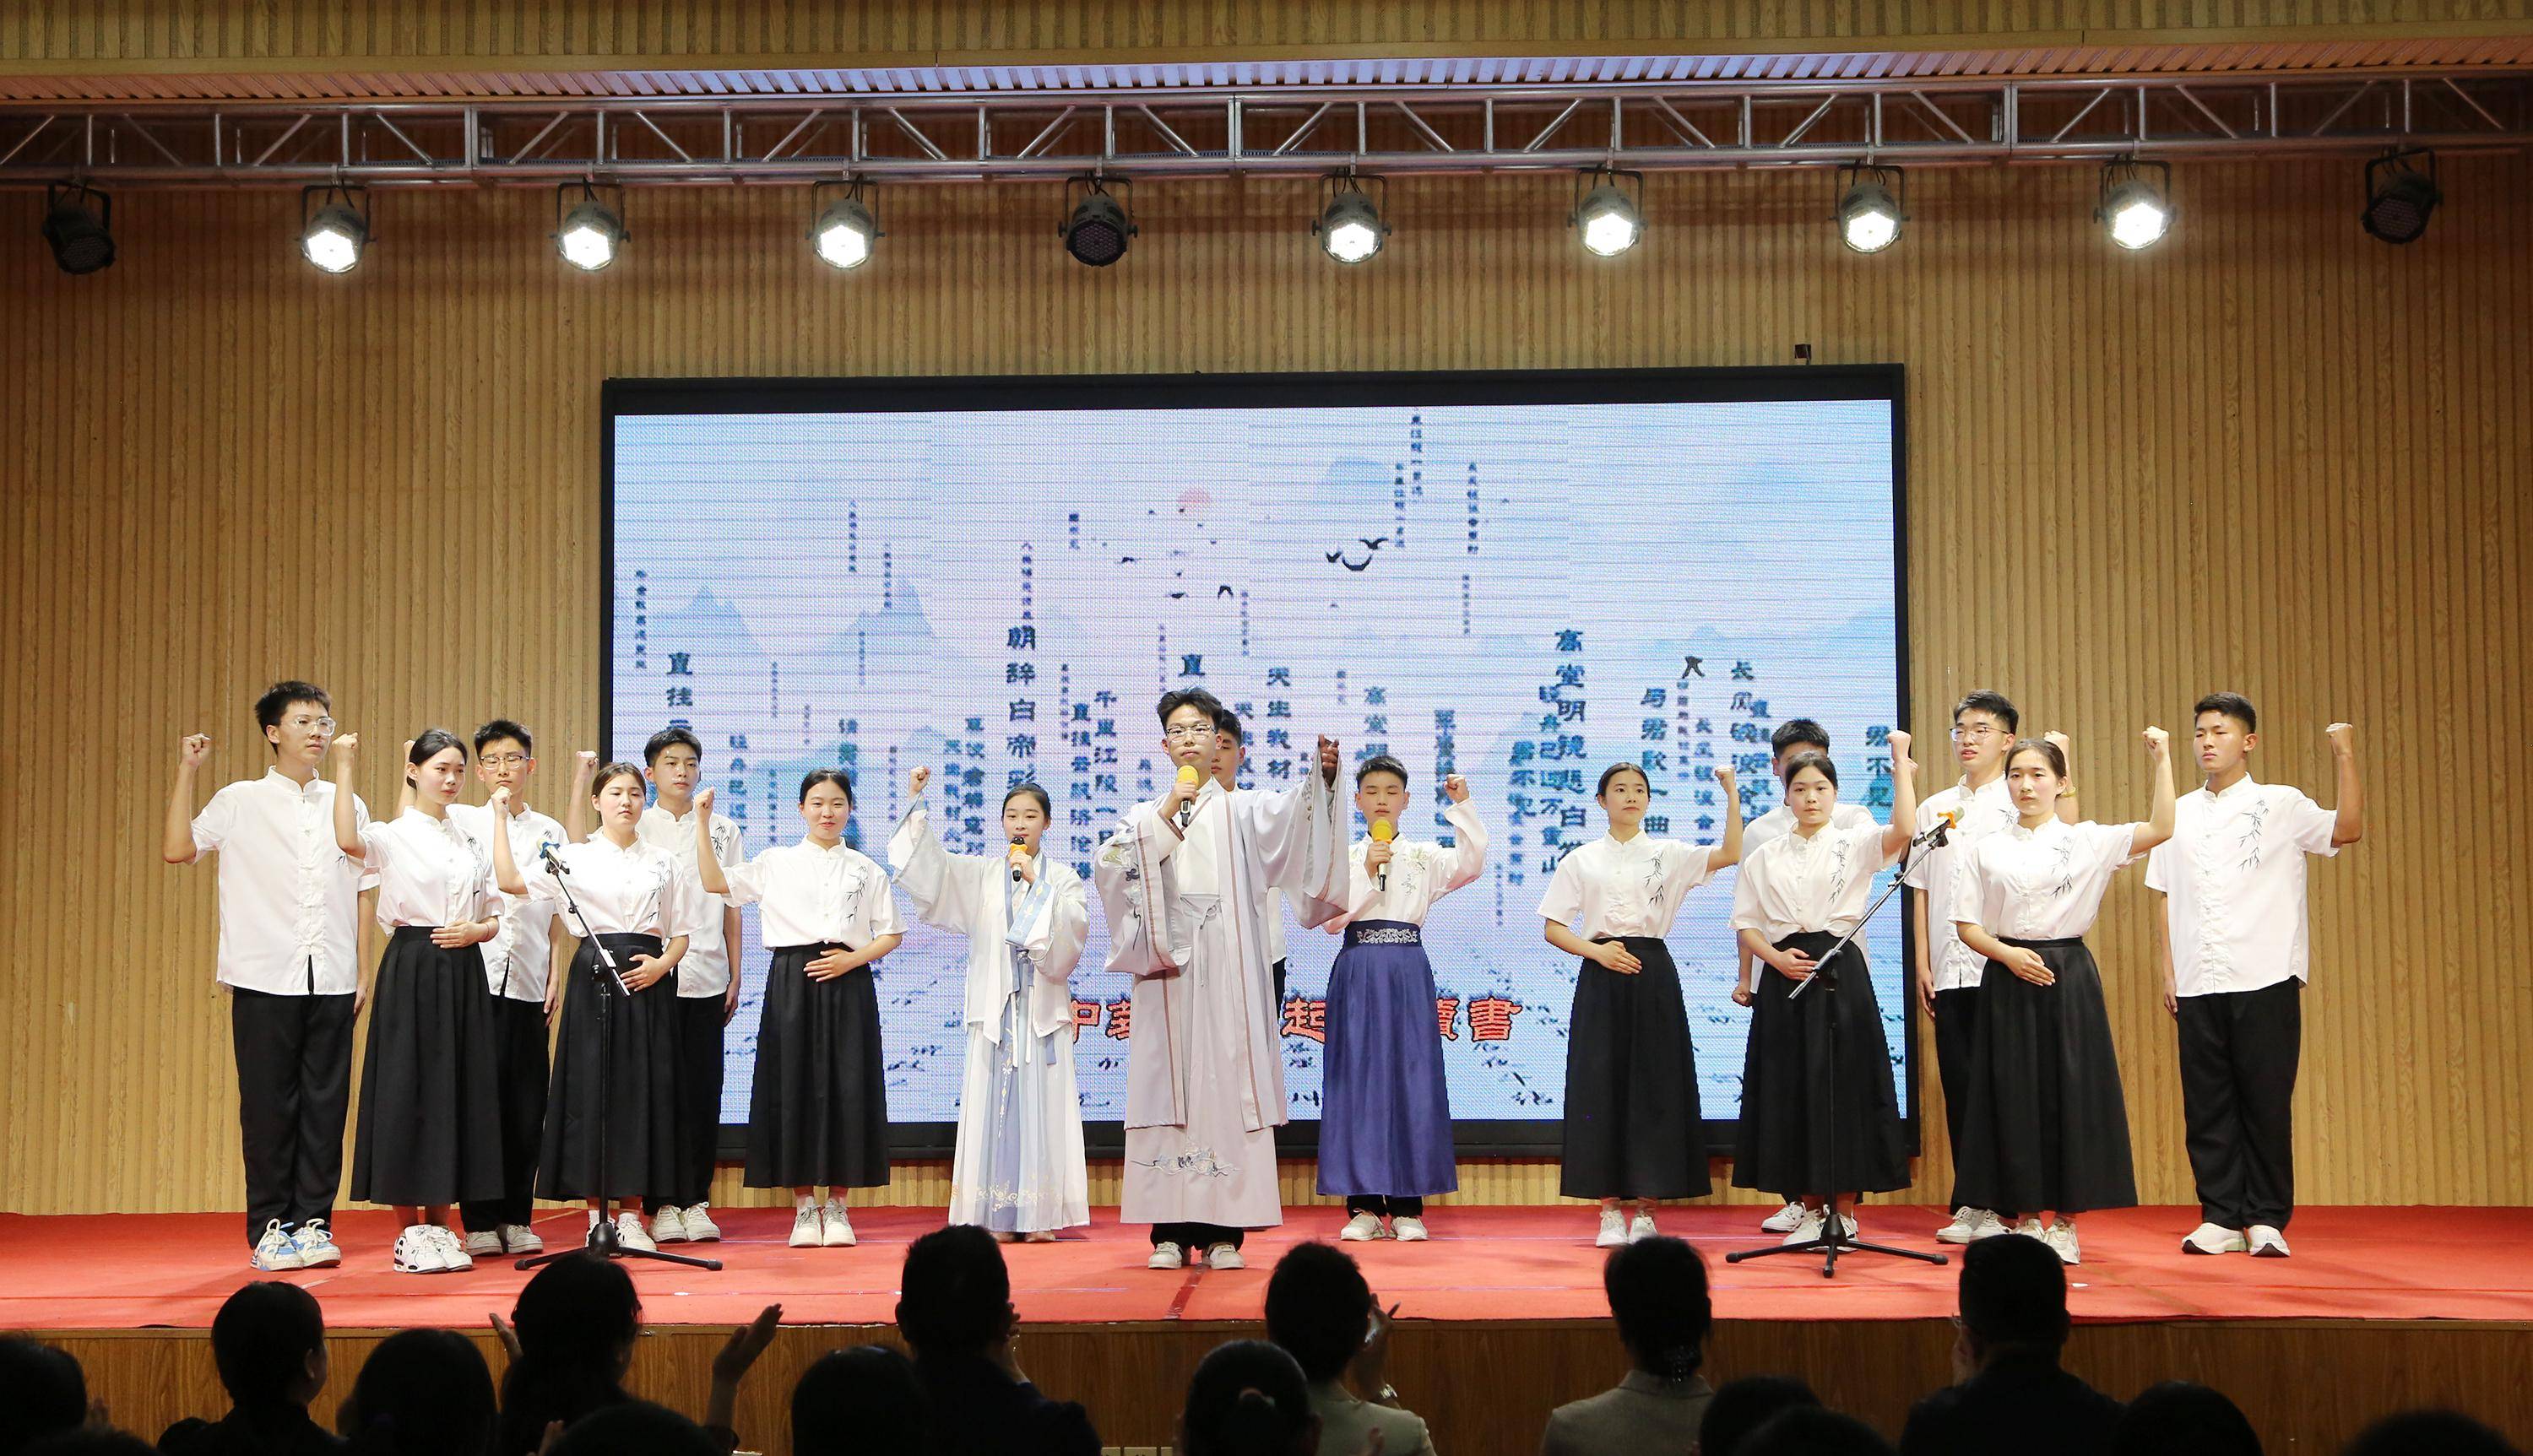 河北省瑞林传统文化书院第三届经典美文朗诵大赛顺利举行